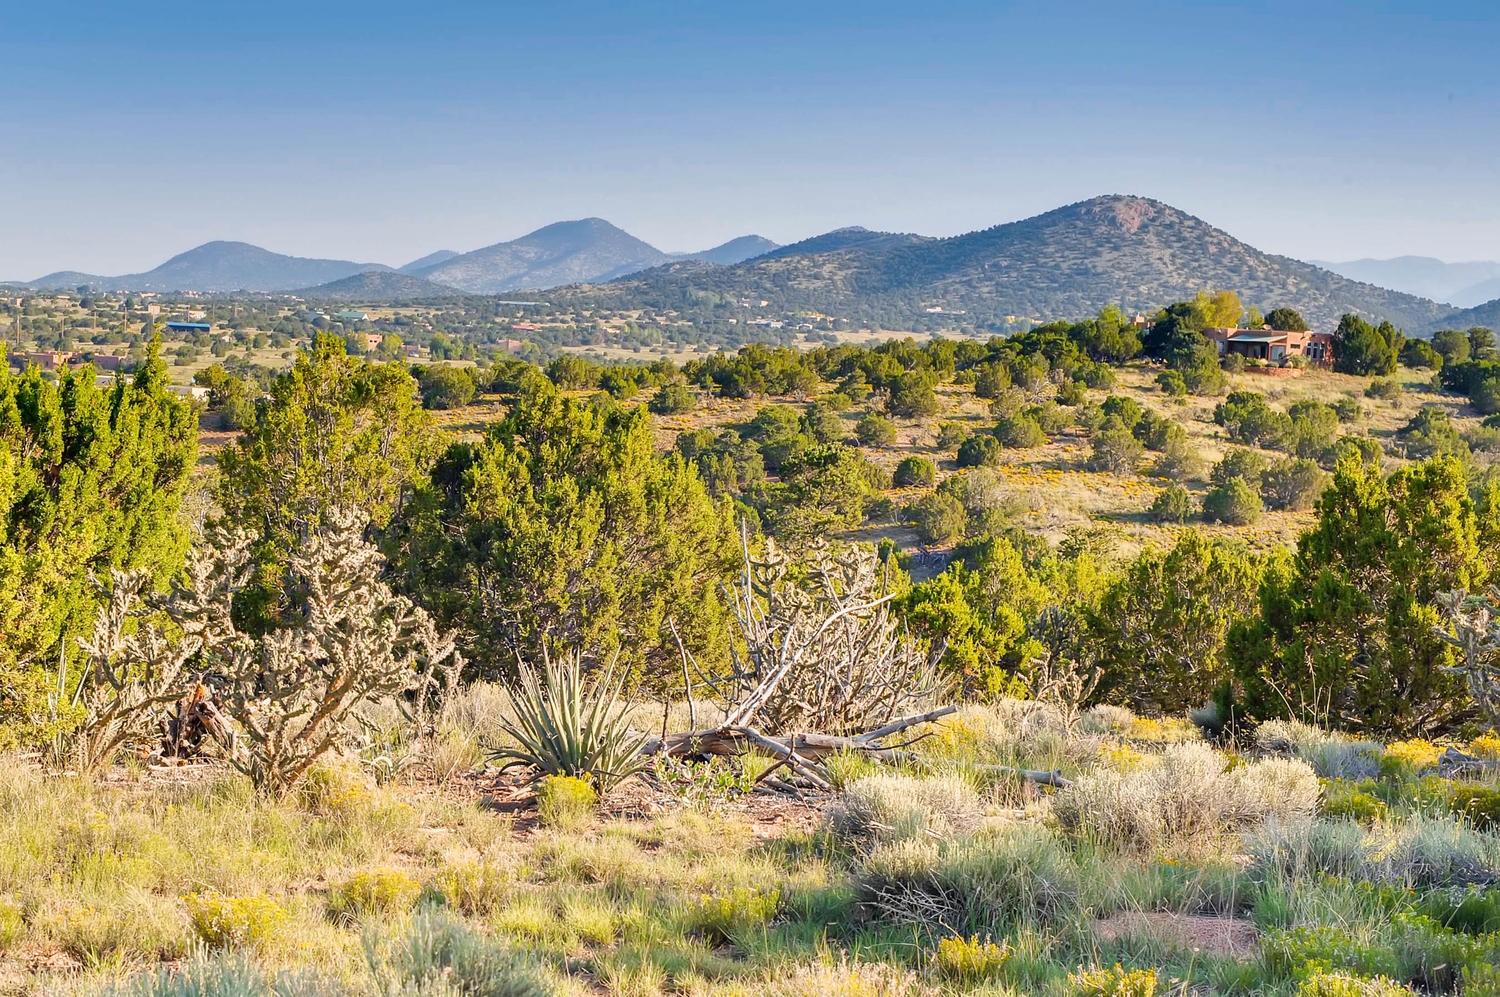 97 Camino Acote Lot 12, Santa Fe, New Mexico 87508, ,Land,For Sale,97 Camino Acote Lot 12,202002981